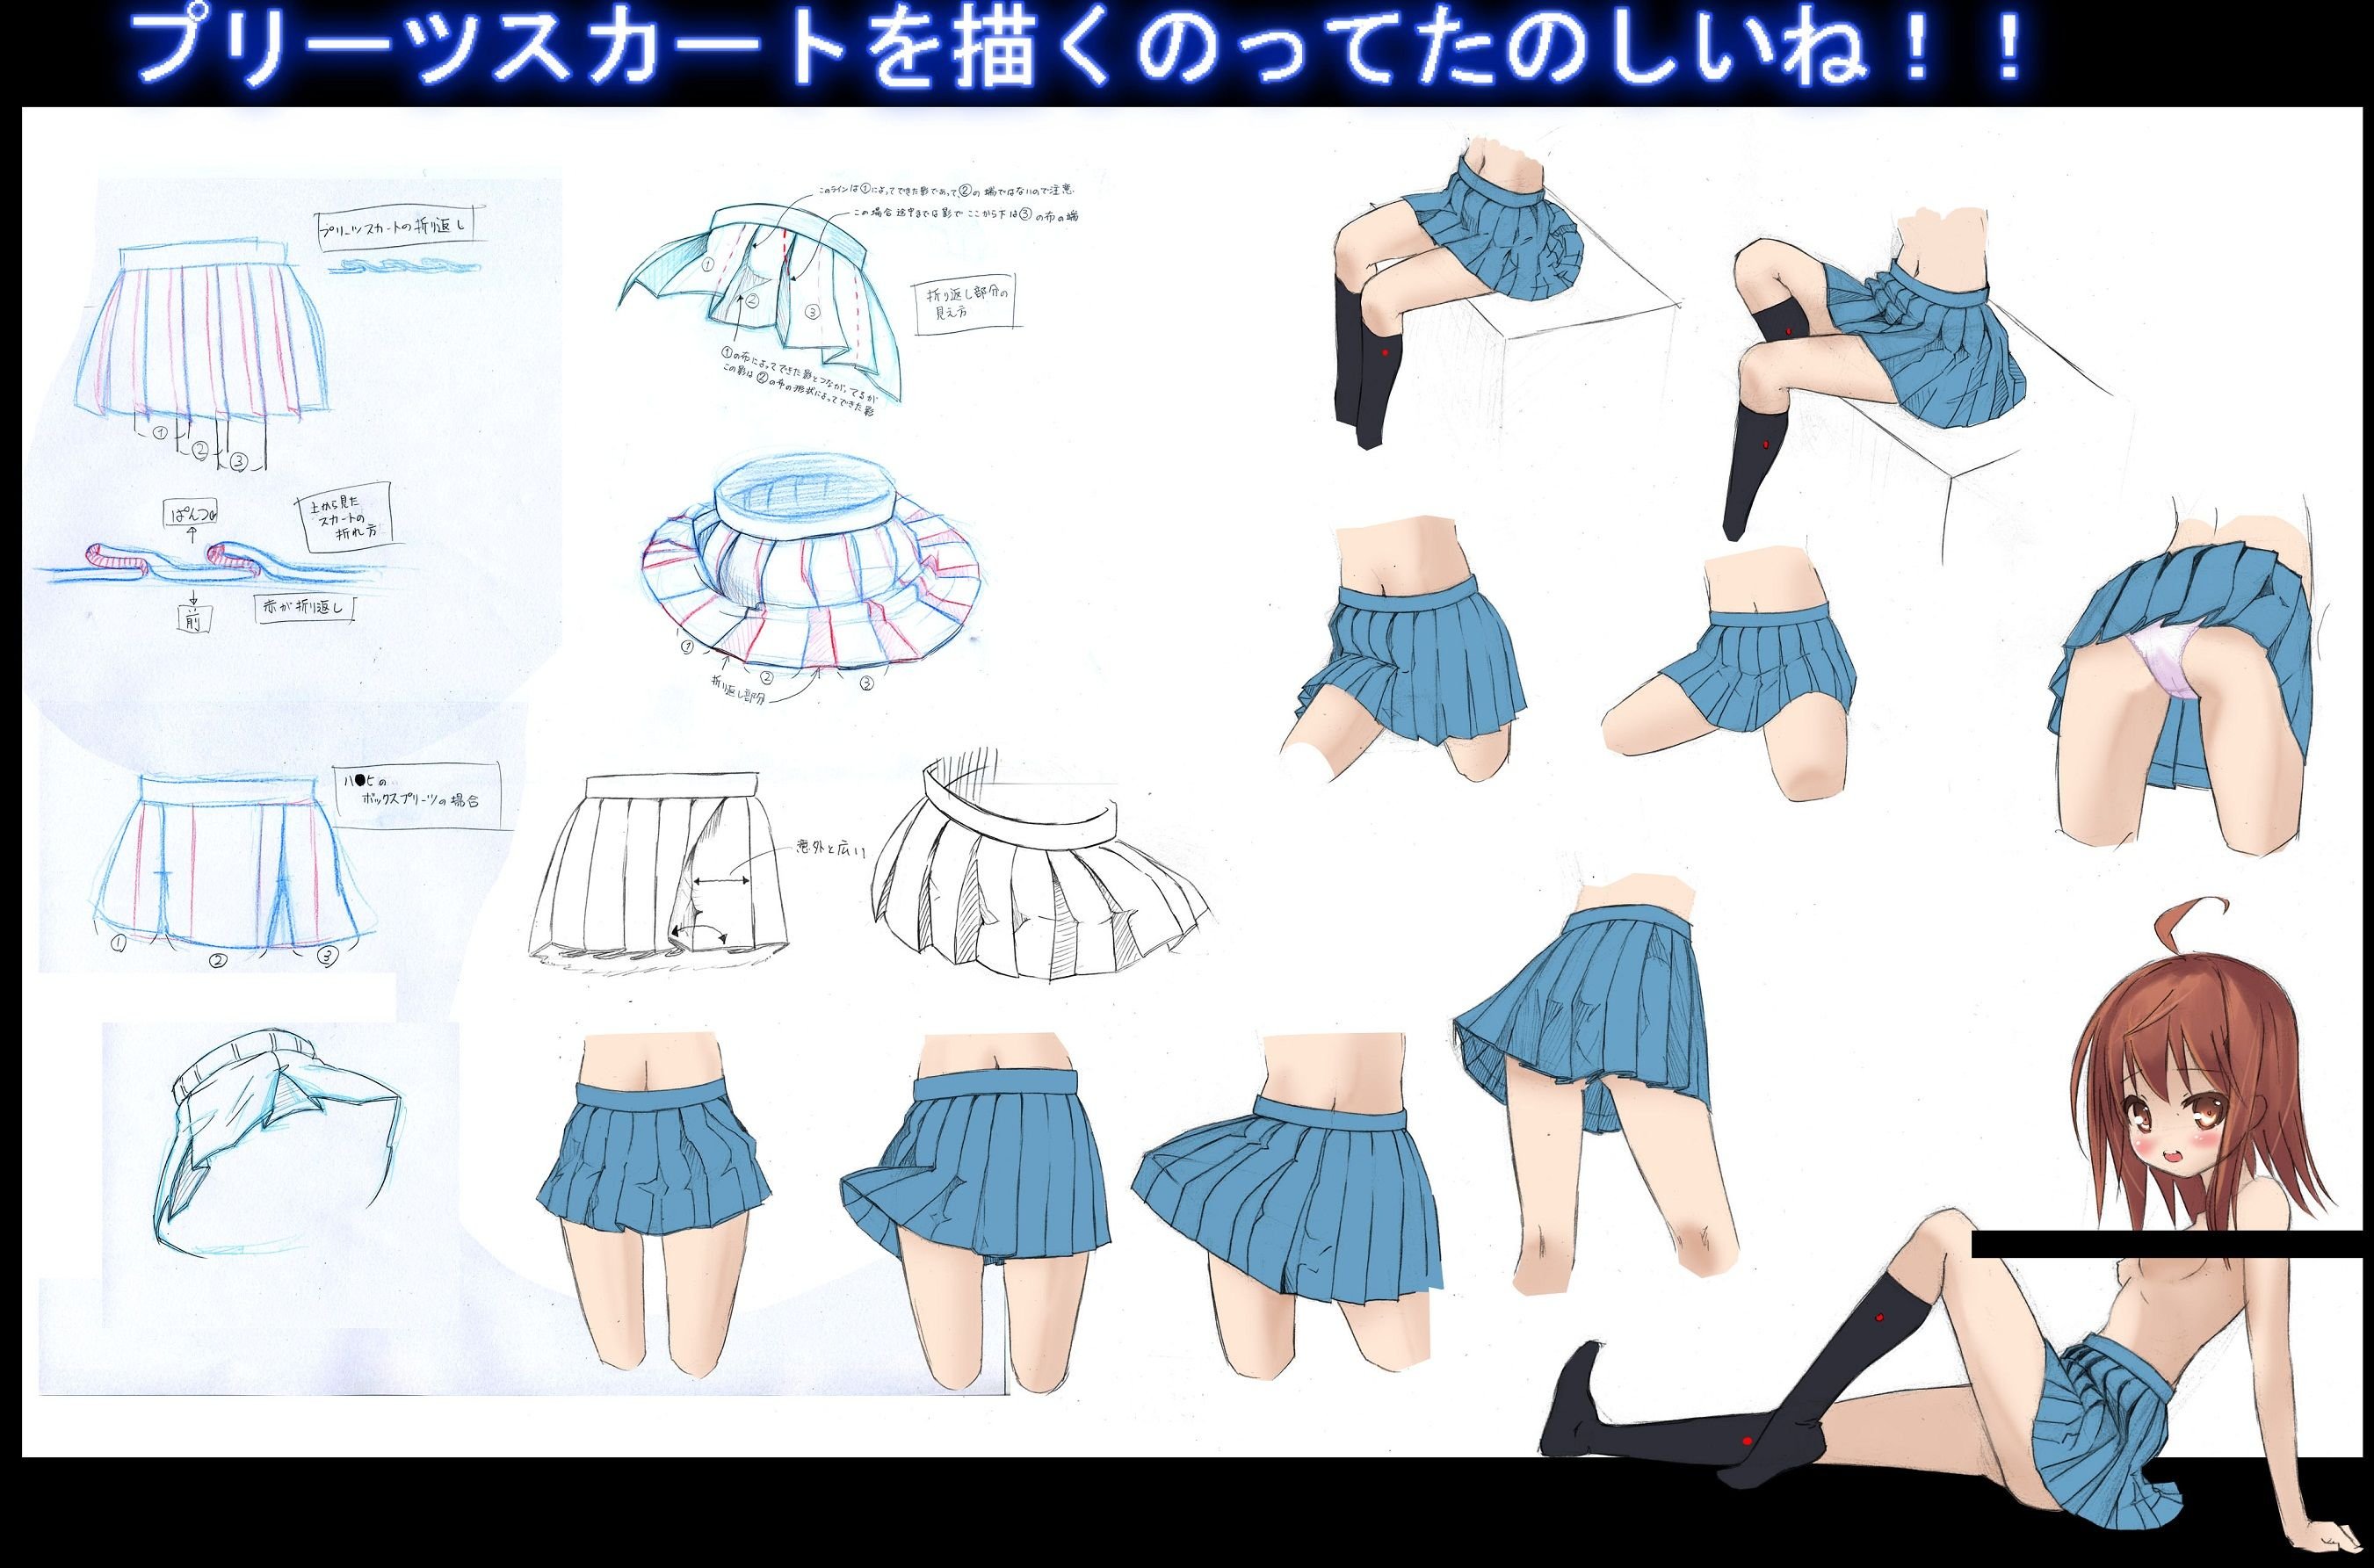 Anime skirt reference